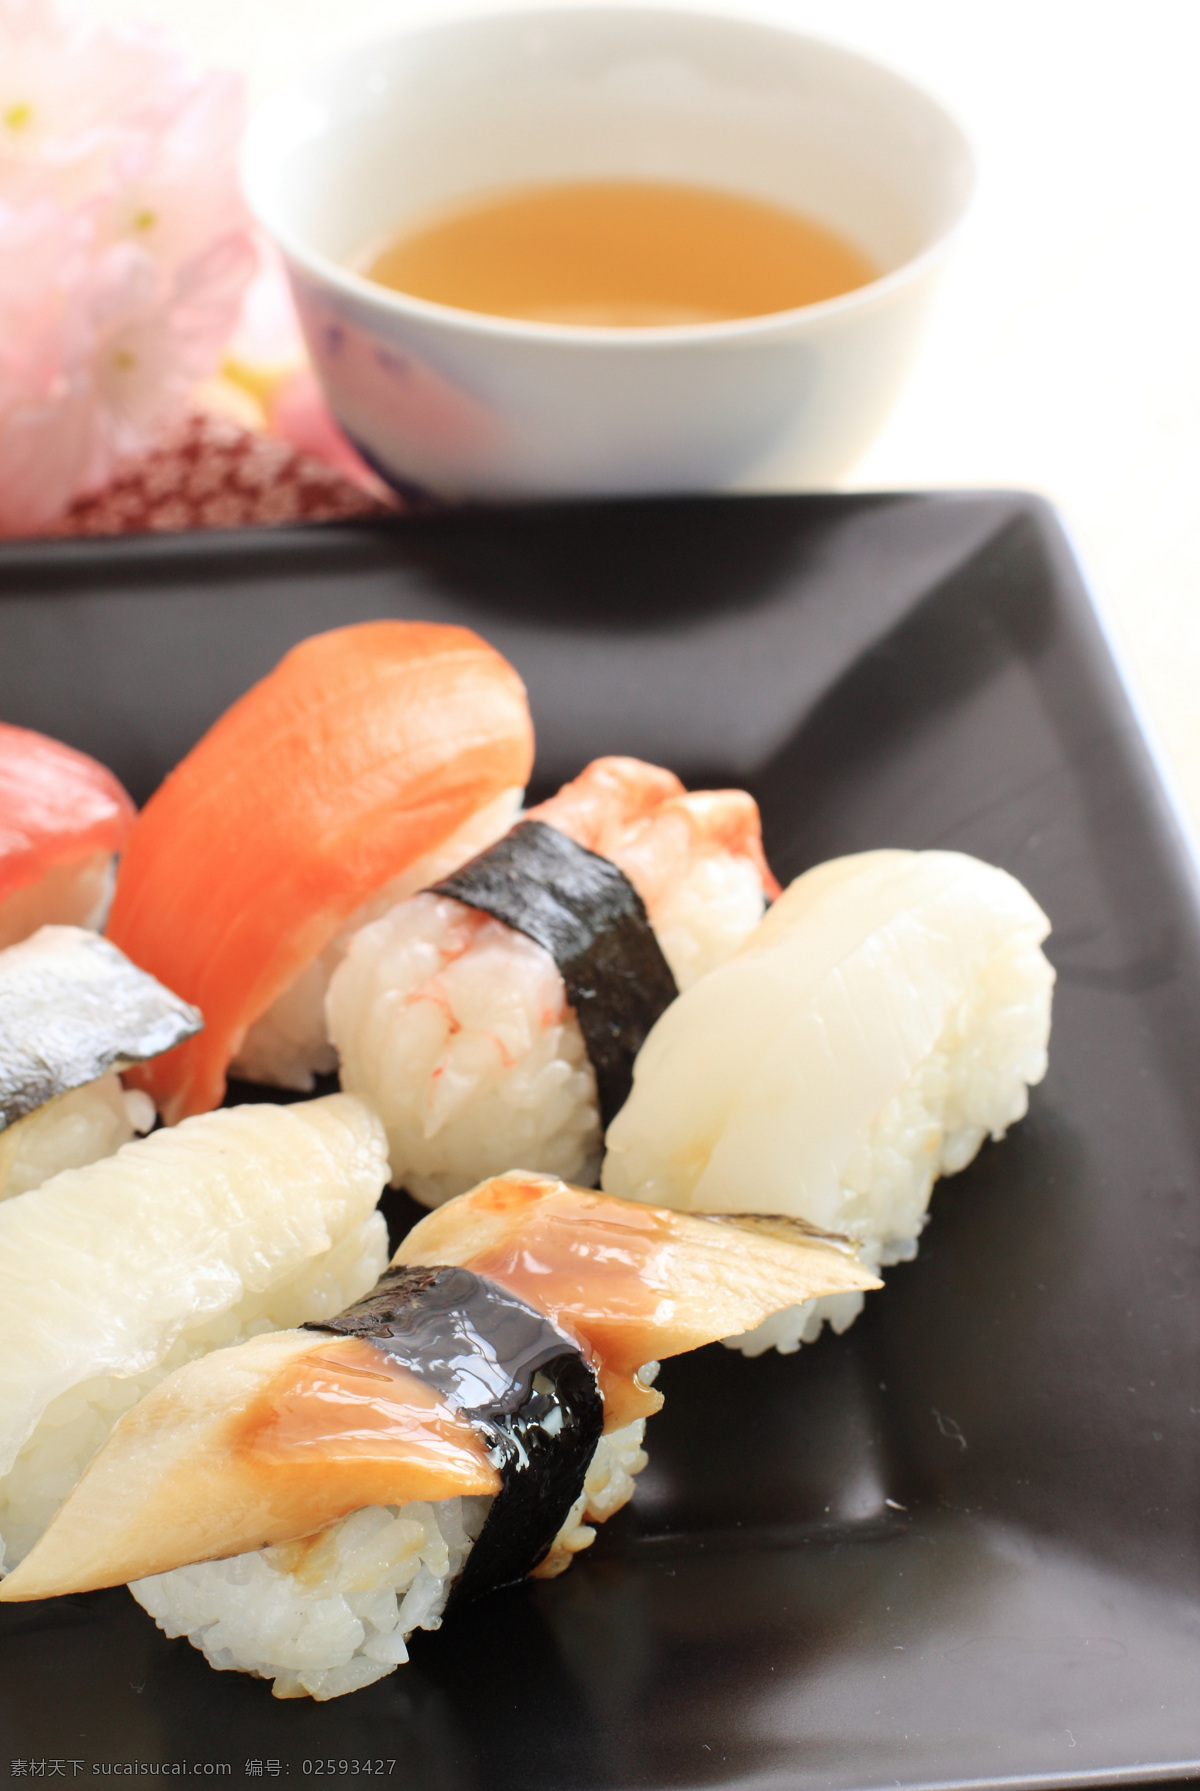 美味 三文鱼 寿司 调料 诱人美食 食物原料 食材 原料 食物摄影 外国美 食餐饮美食 餐饮美食 西餐美食